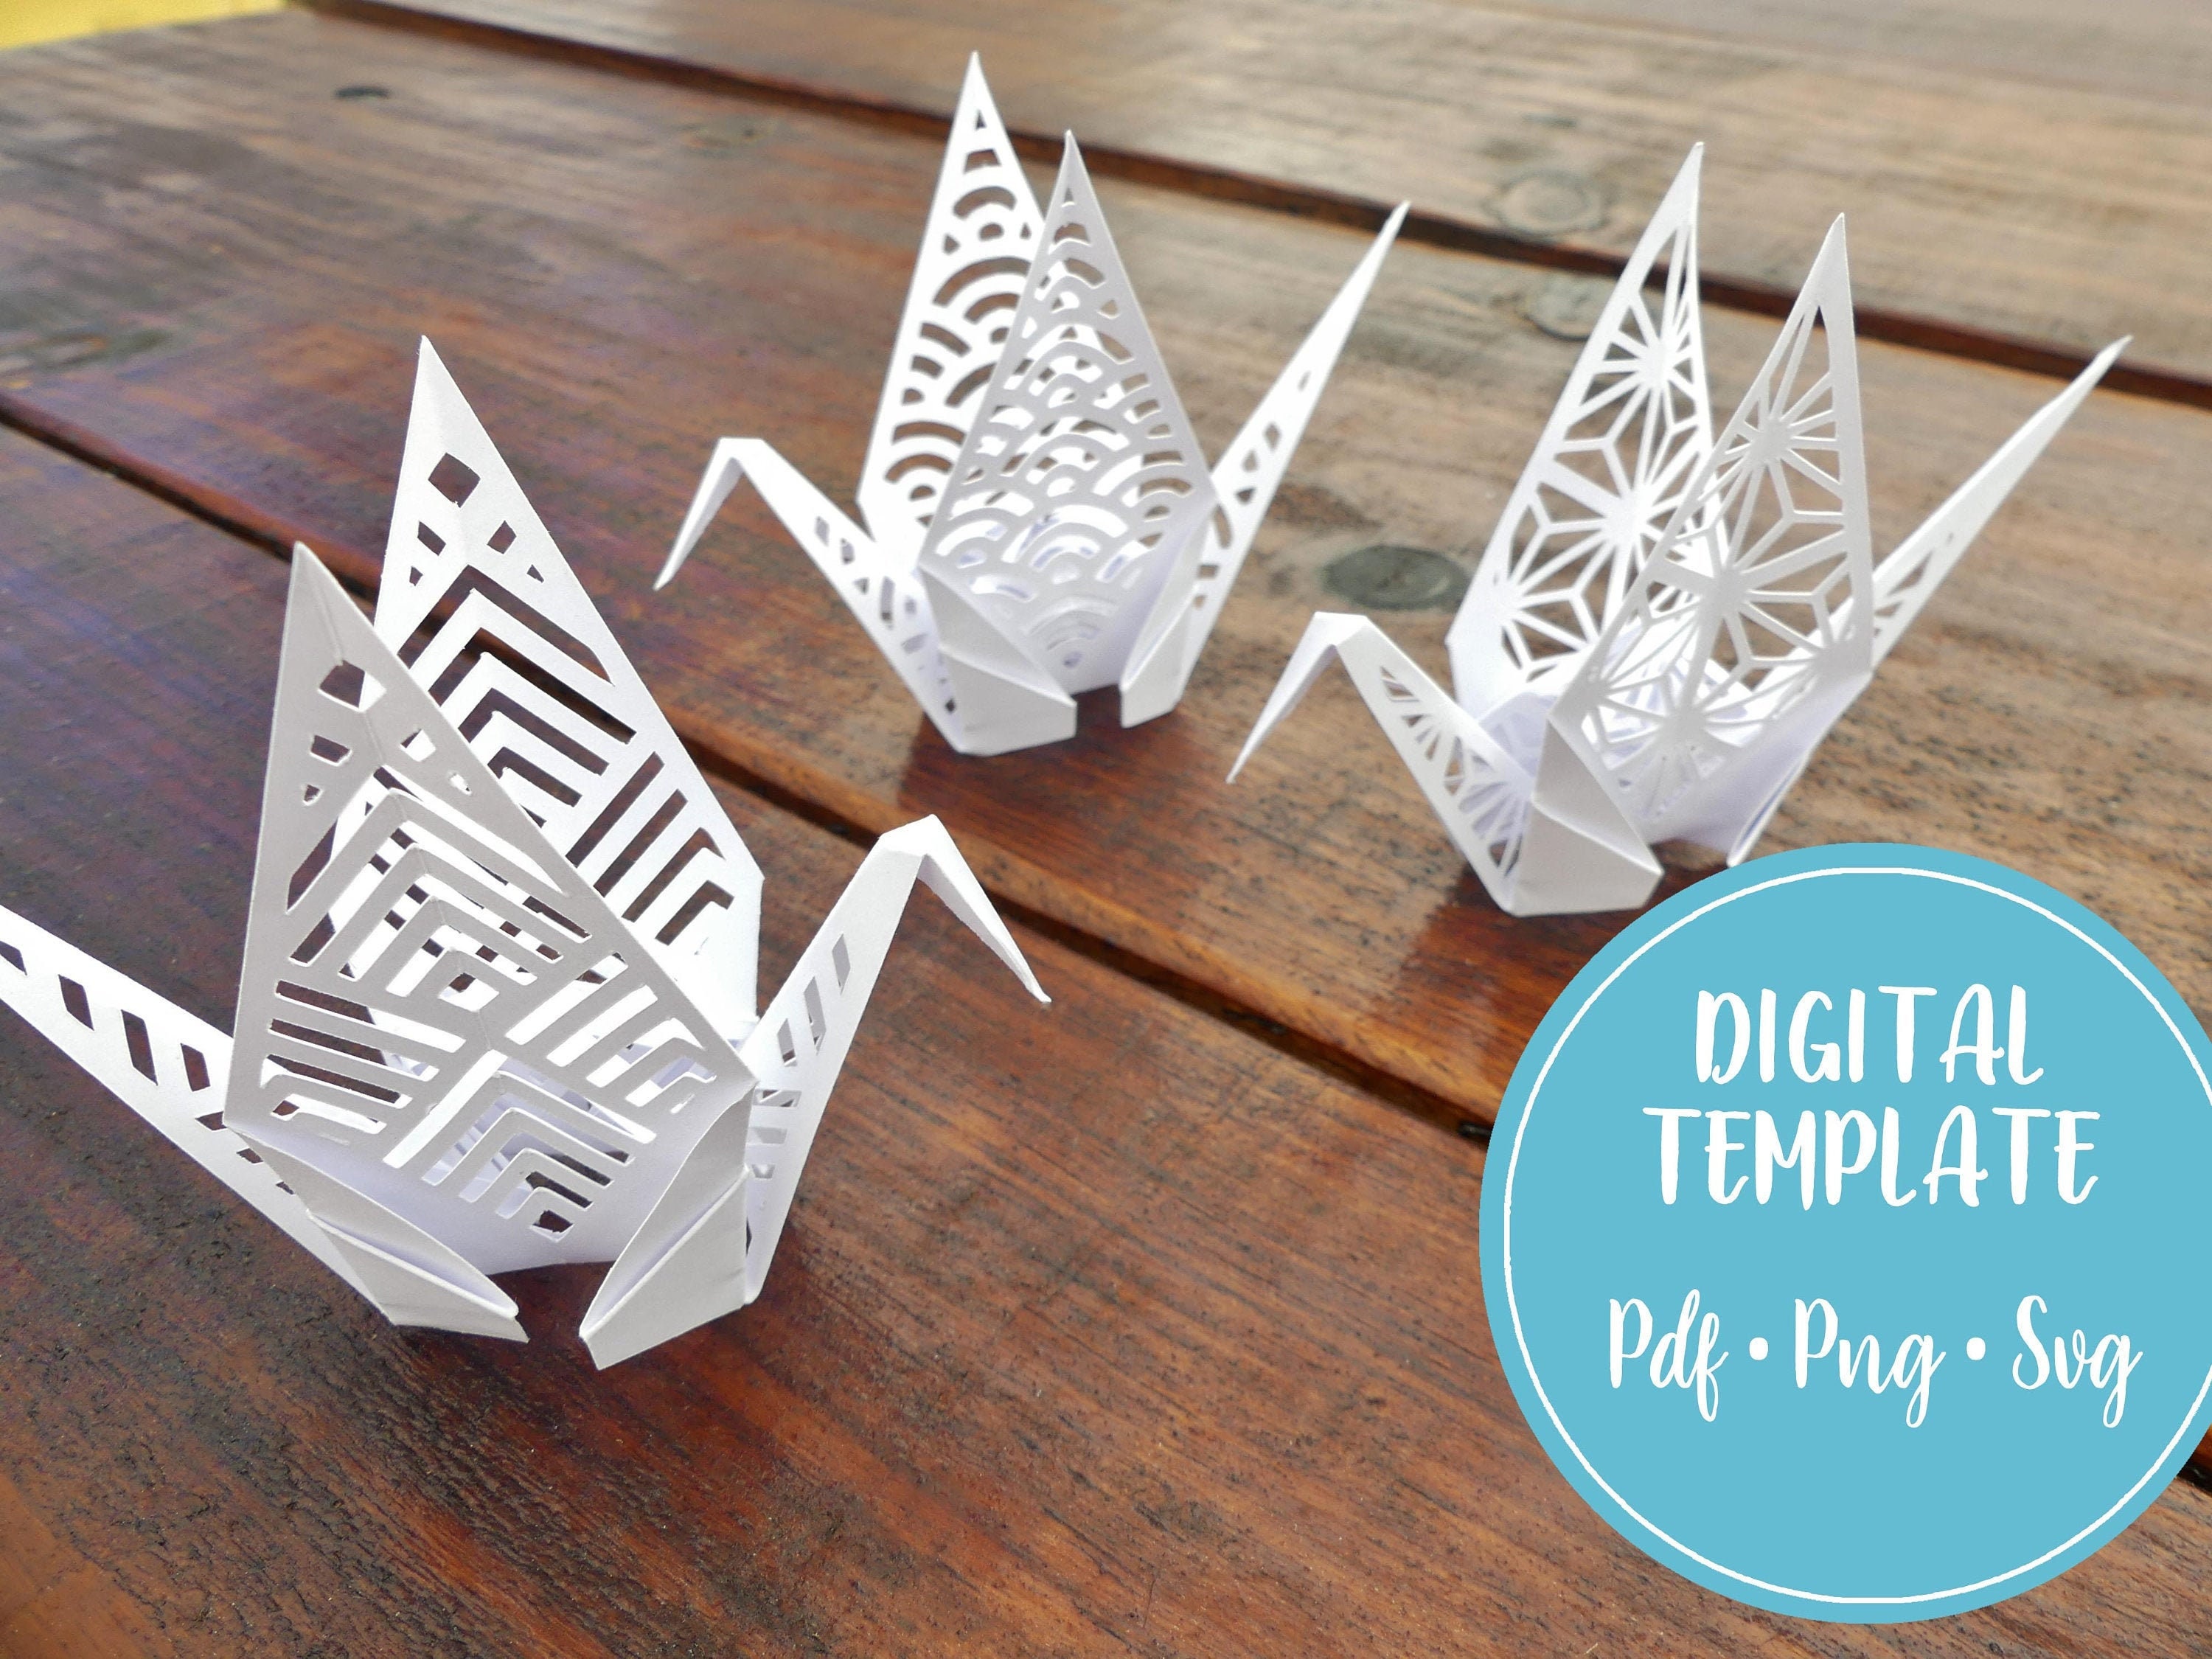 DIY Paper Crane Origami Decorations - Family Focus Blog